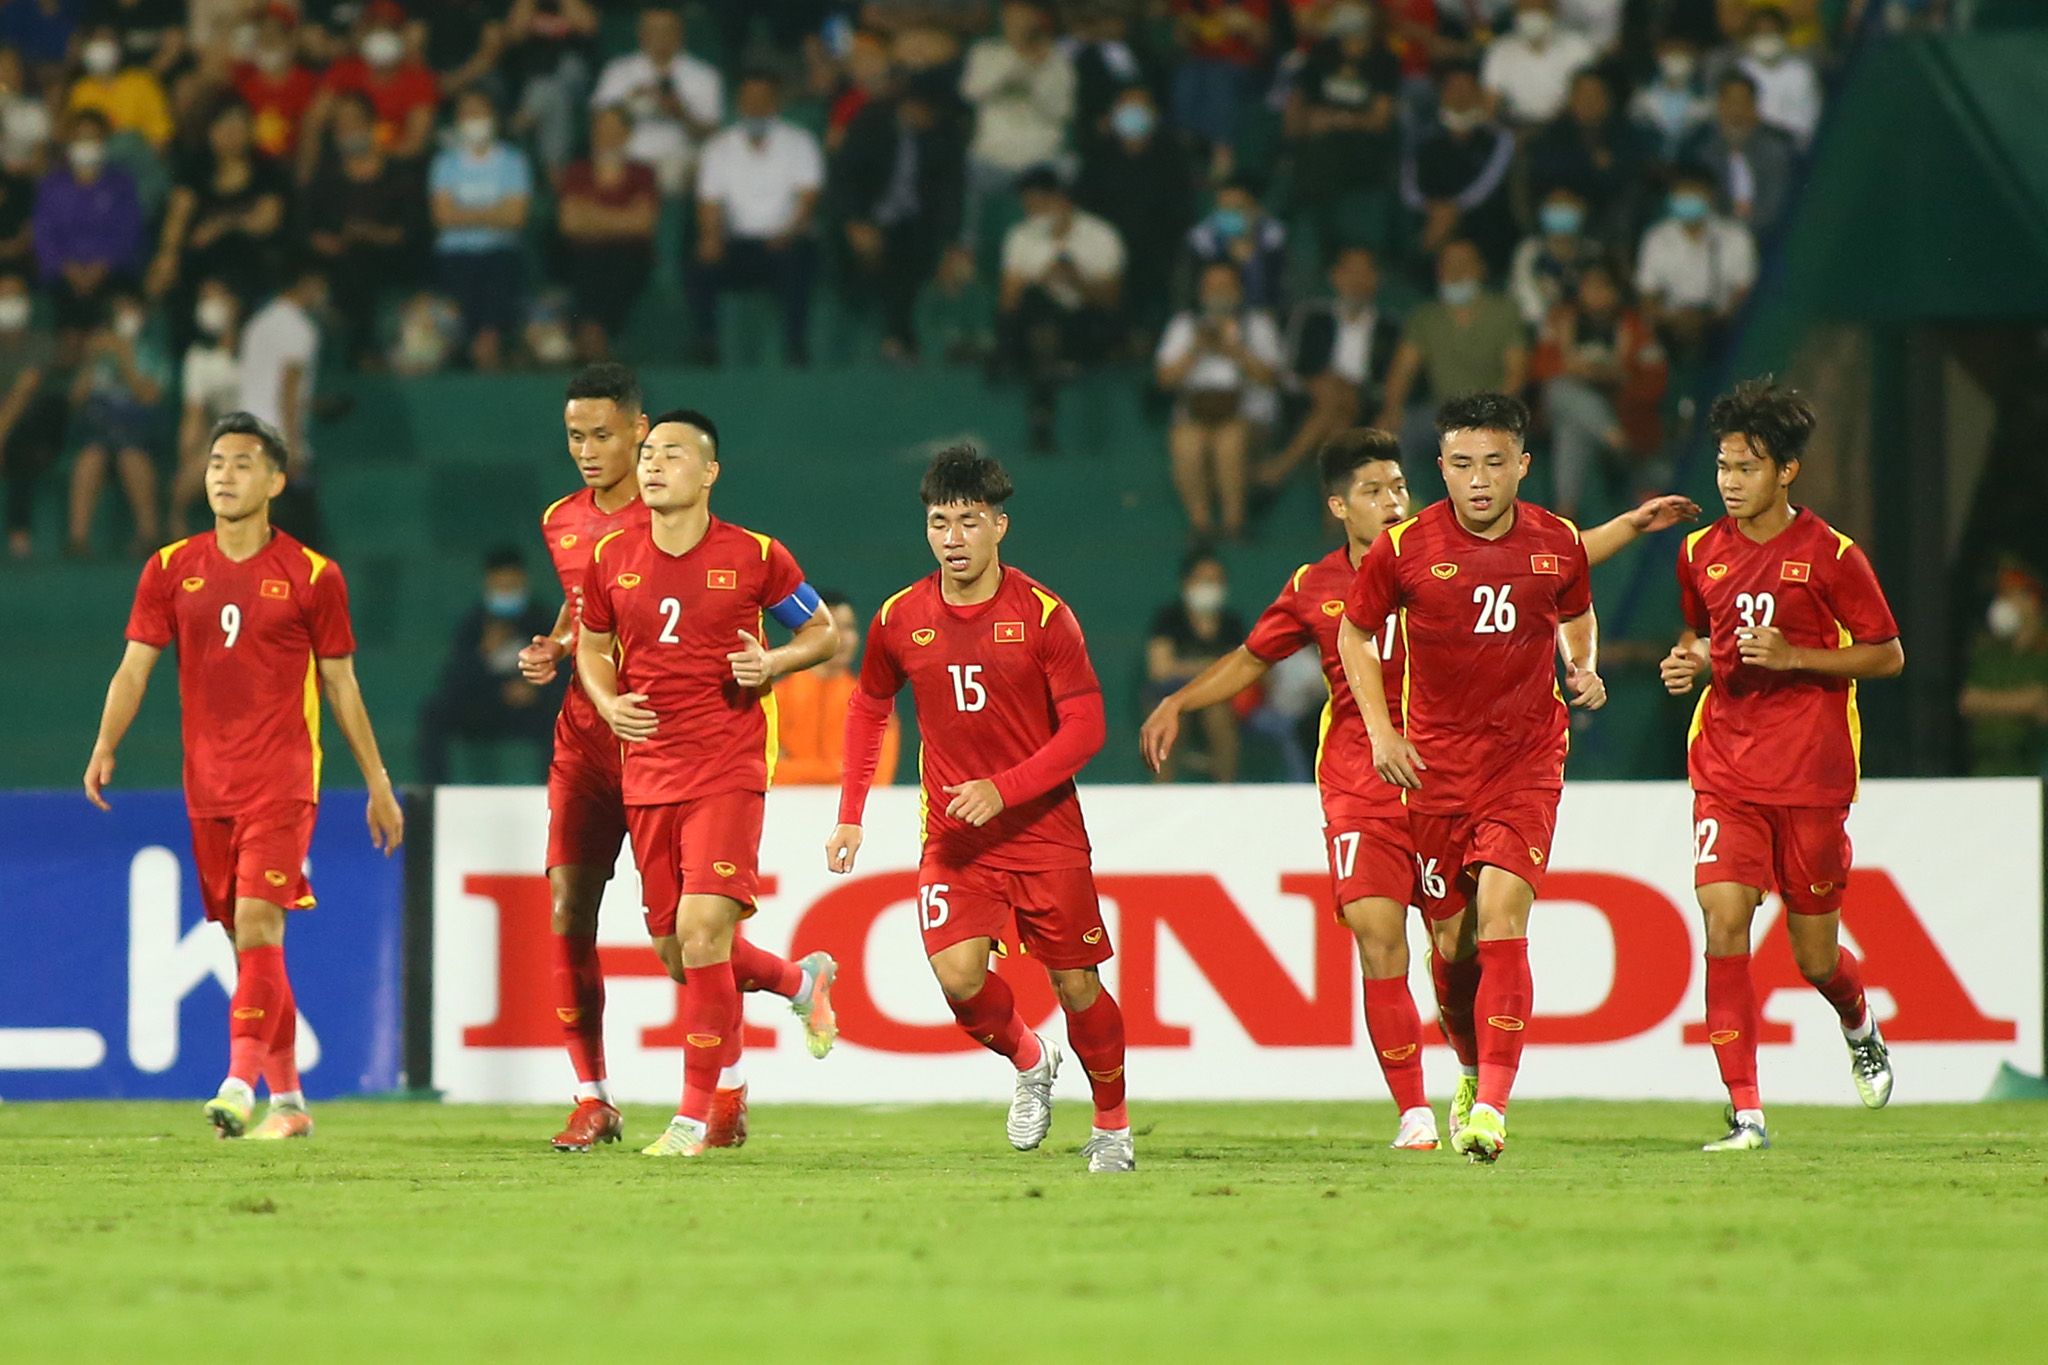 Hãy đến xem trận đấu của U.23 Việt Nam và cùng cổ vũ cho đội tuyển nhà ta! Điều đó không chỉ là cơ hội để thấy các tuyển thủ dày dạn kinh nghiệm, mà còn là cơ hội để đốt cháy tình yêu bóng đá trong trái tim của bạn.